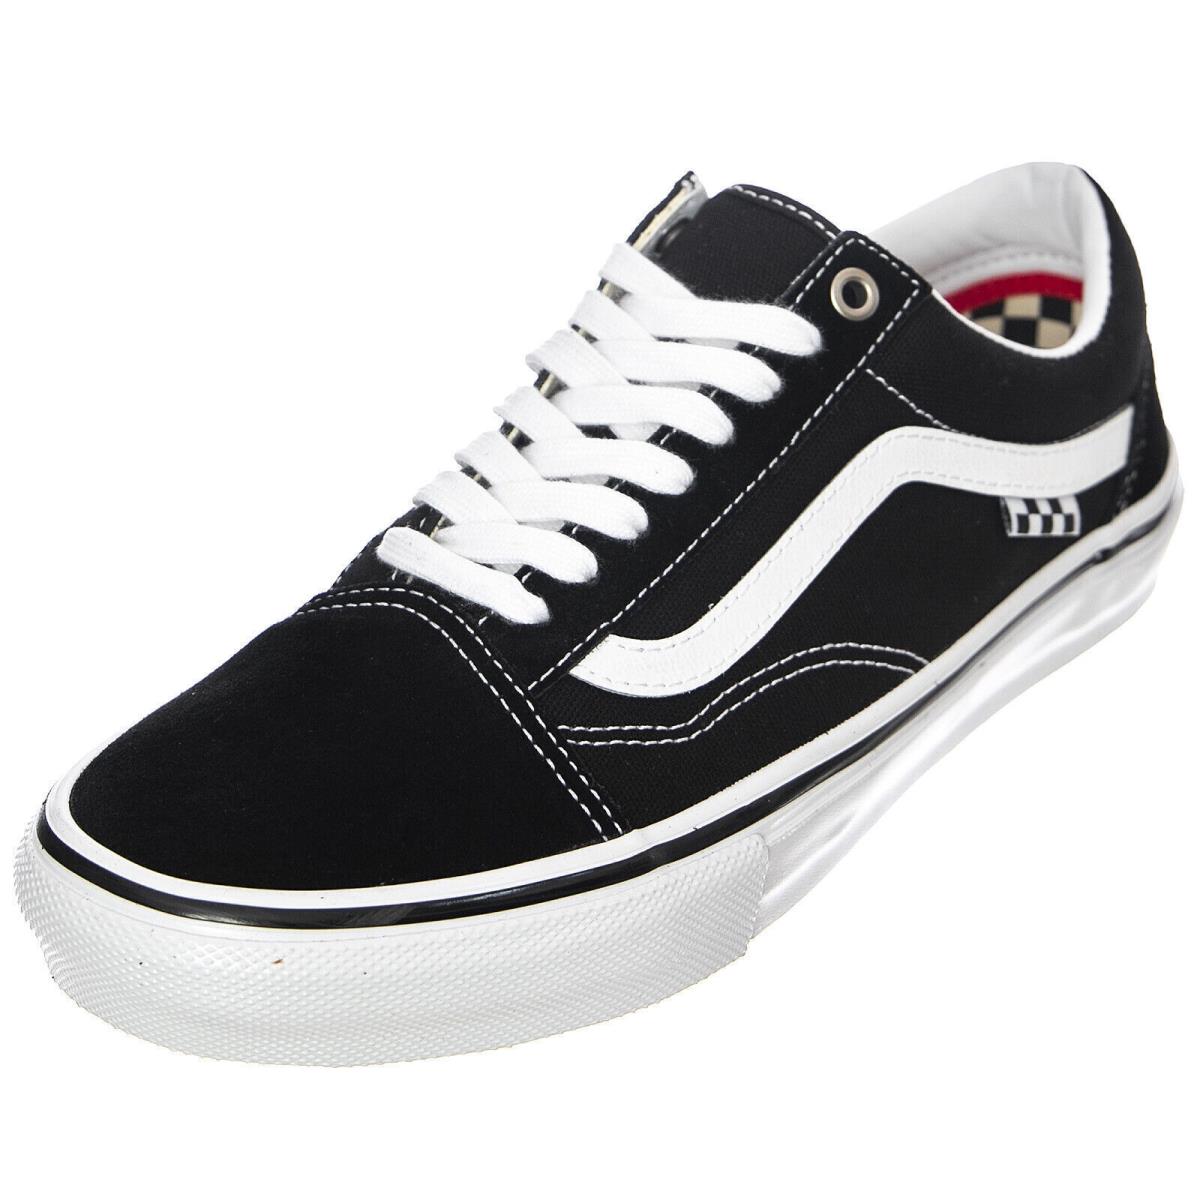 Vans Skate Old Skool Sneakers Black/white Classic Men`s Size 6.0 Women 7.5